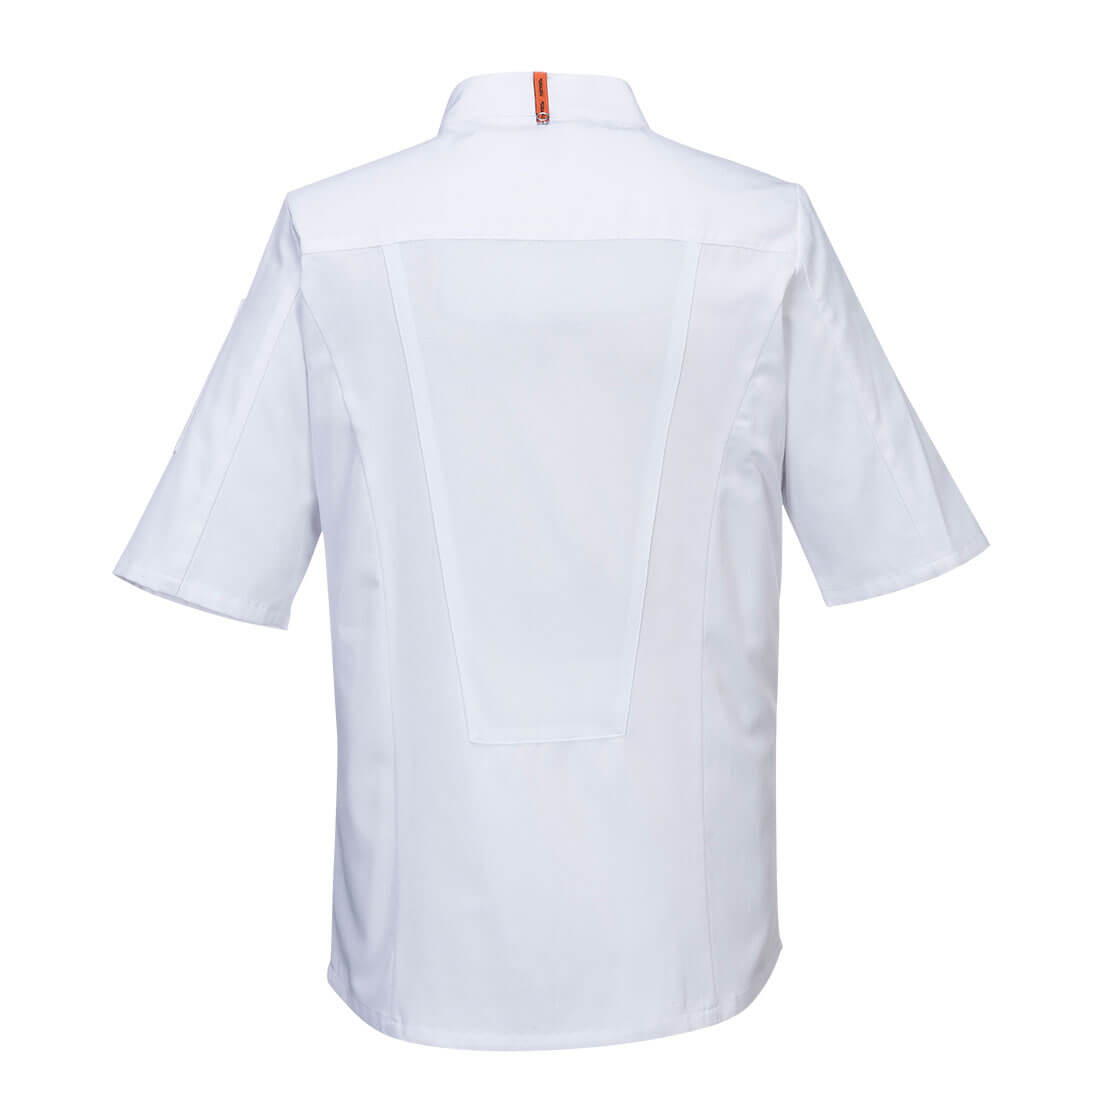 Veste de cuisine manches longues Stretch Mesh Air Pro - Les vêtements de protection